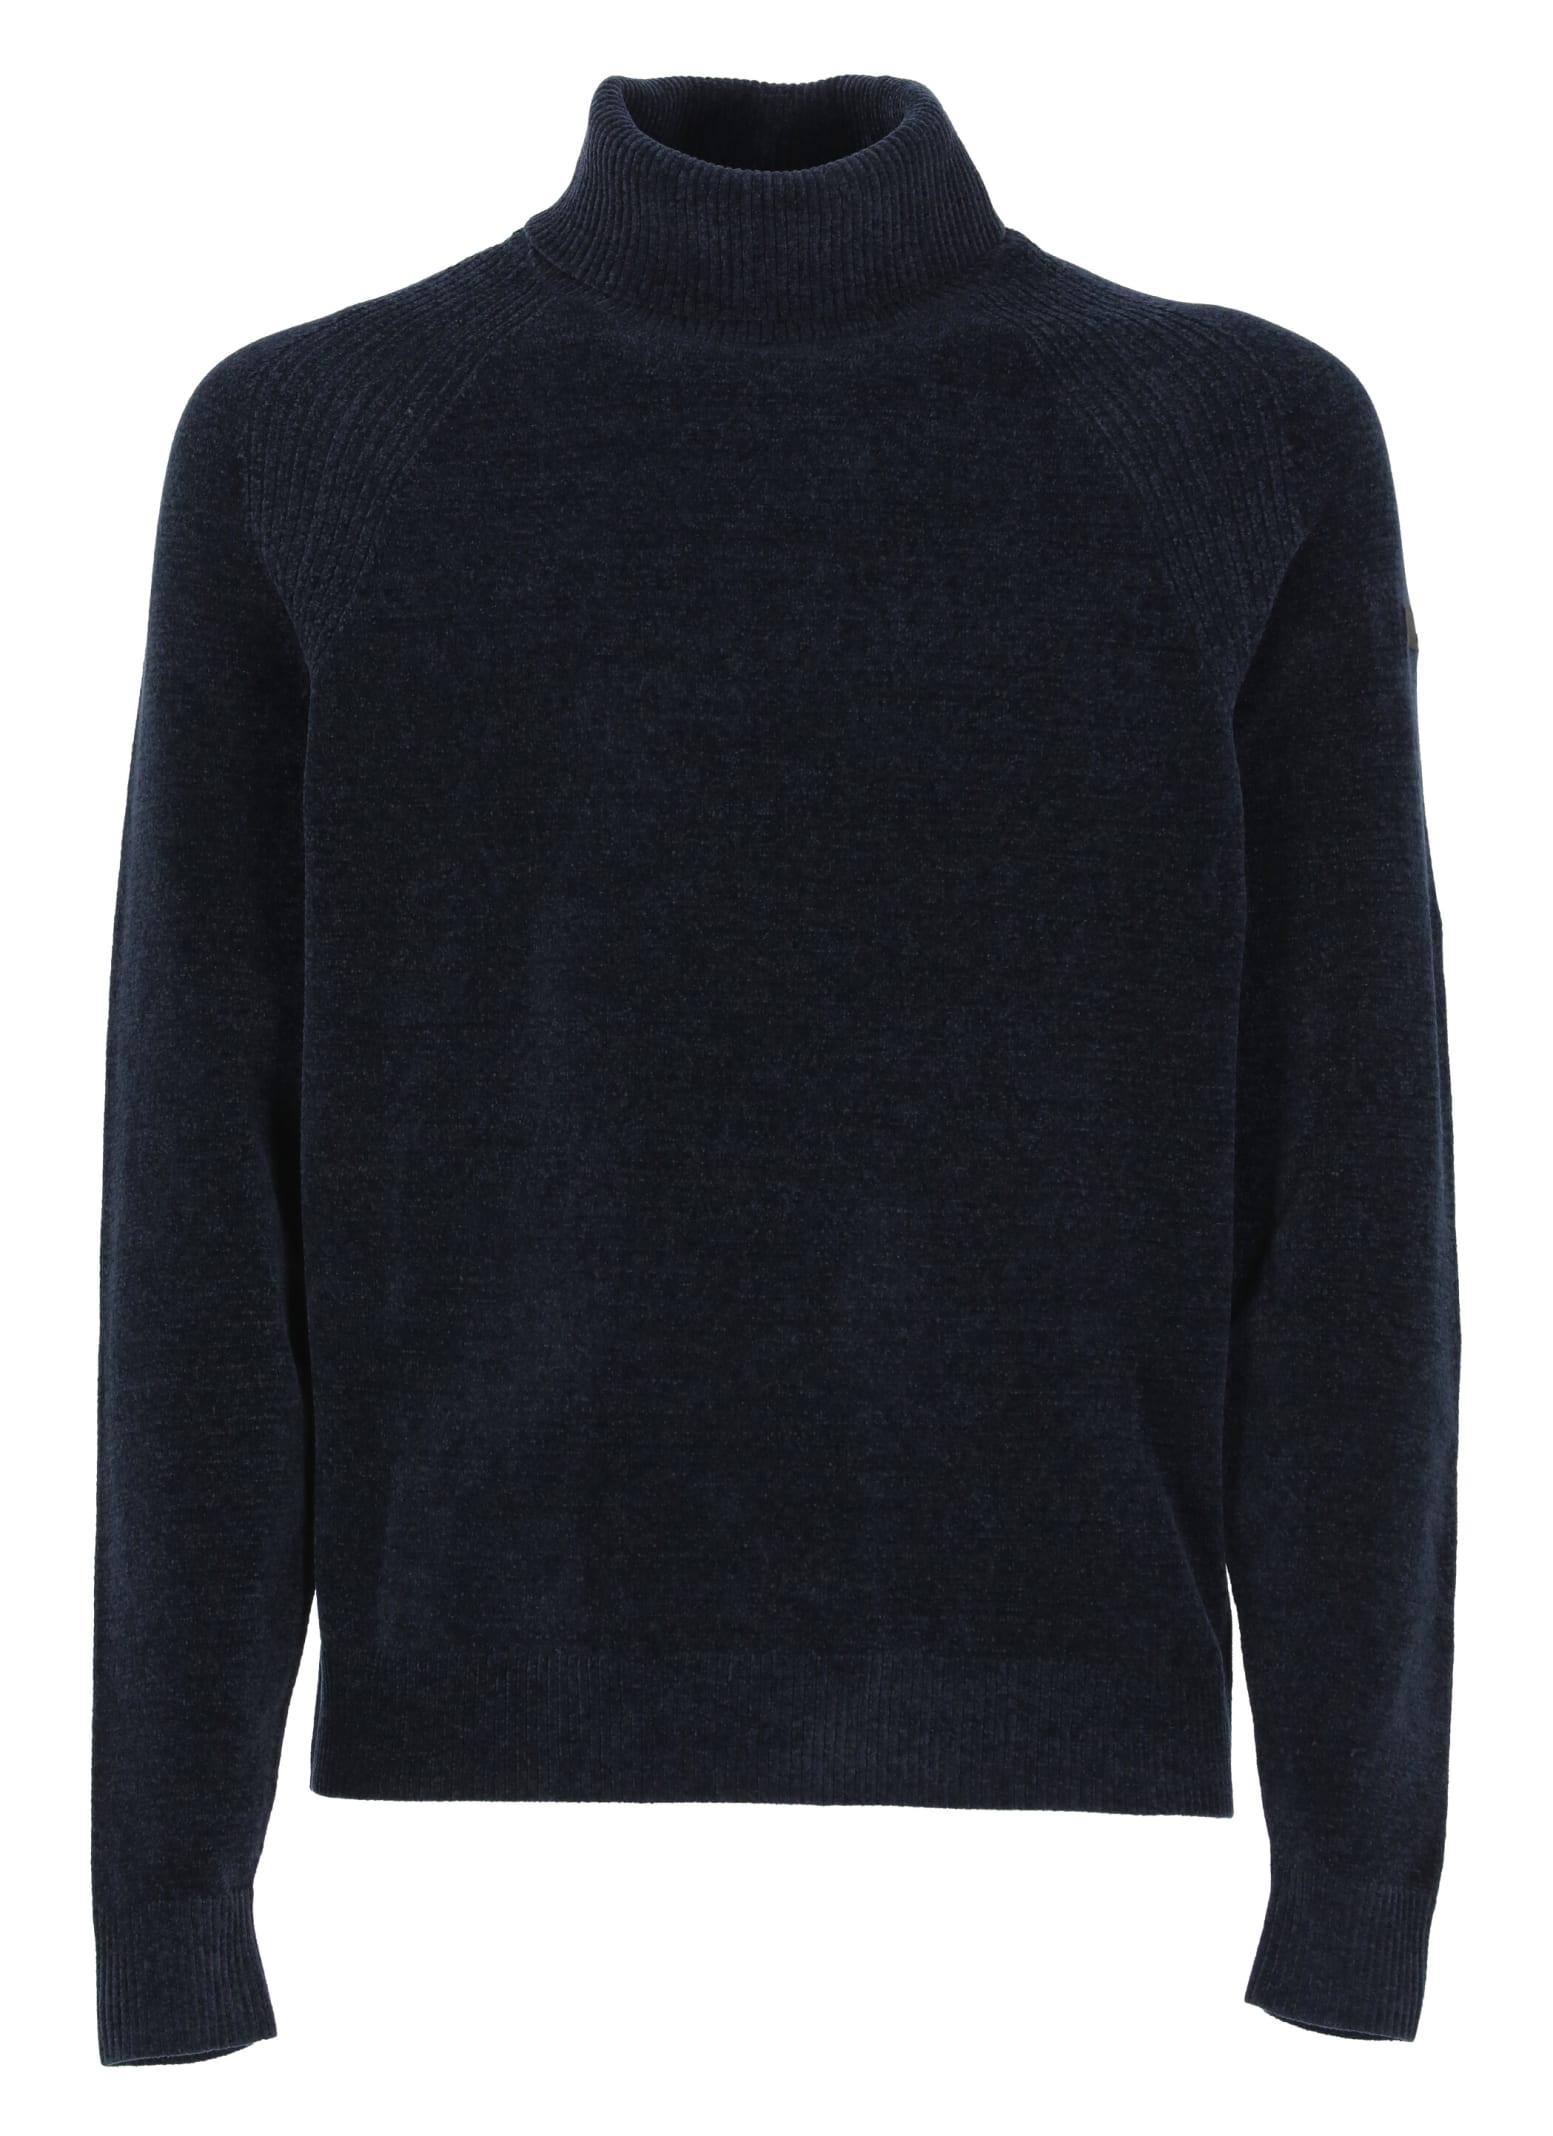 velvet Knit Fabric Turtleneck Sweater